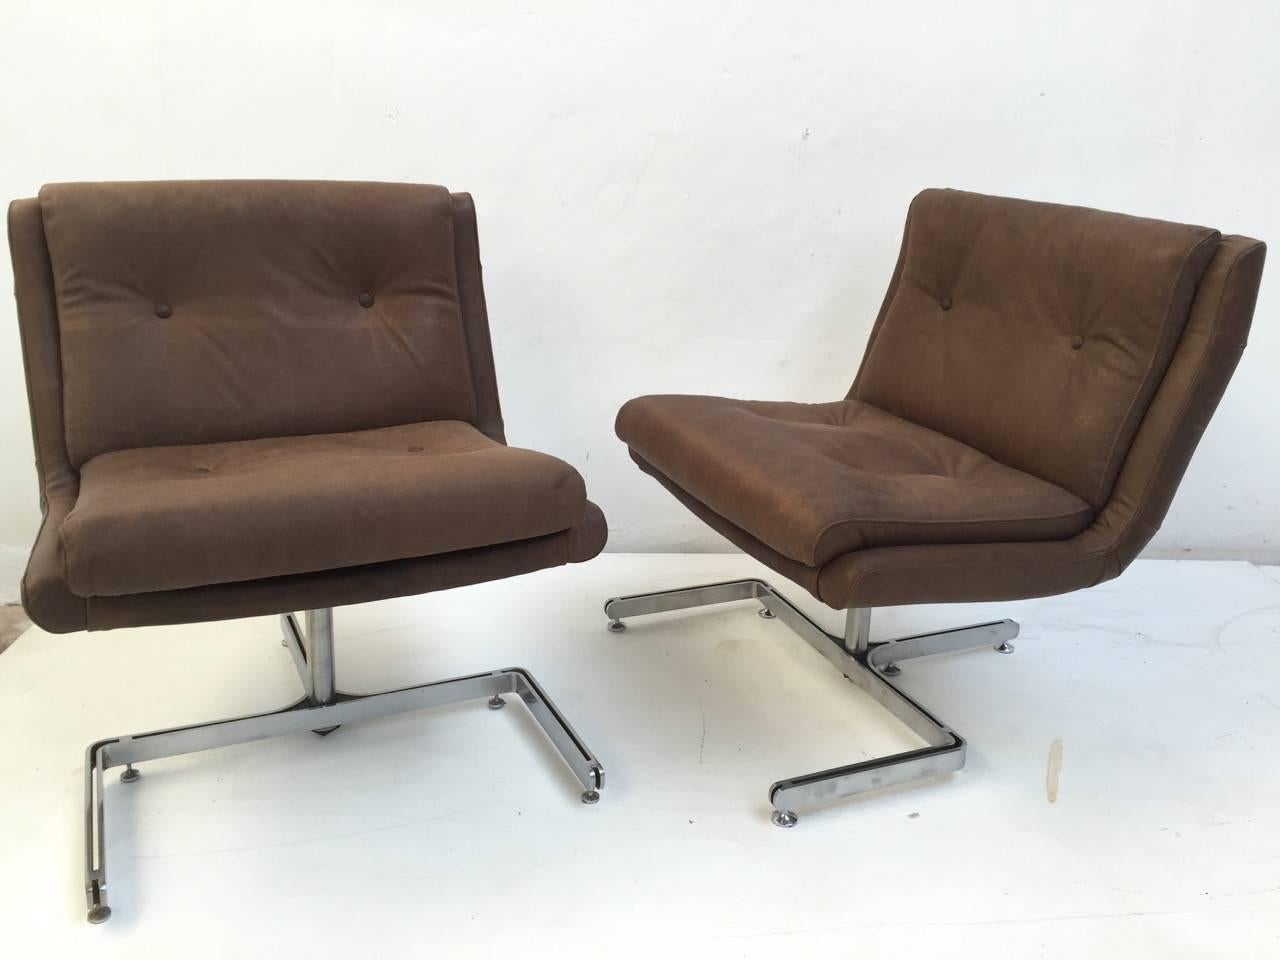 Jolie paire de chaises longues en cuir du designer français Raphael. Ces chaises ont été fraîchement retapissées en cuir brun, avec une impression de peau de serpent, spécialement commandée par nous. La mousse et les sangles authentiques 